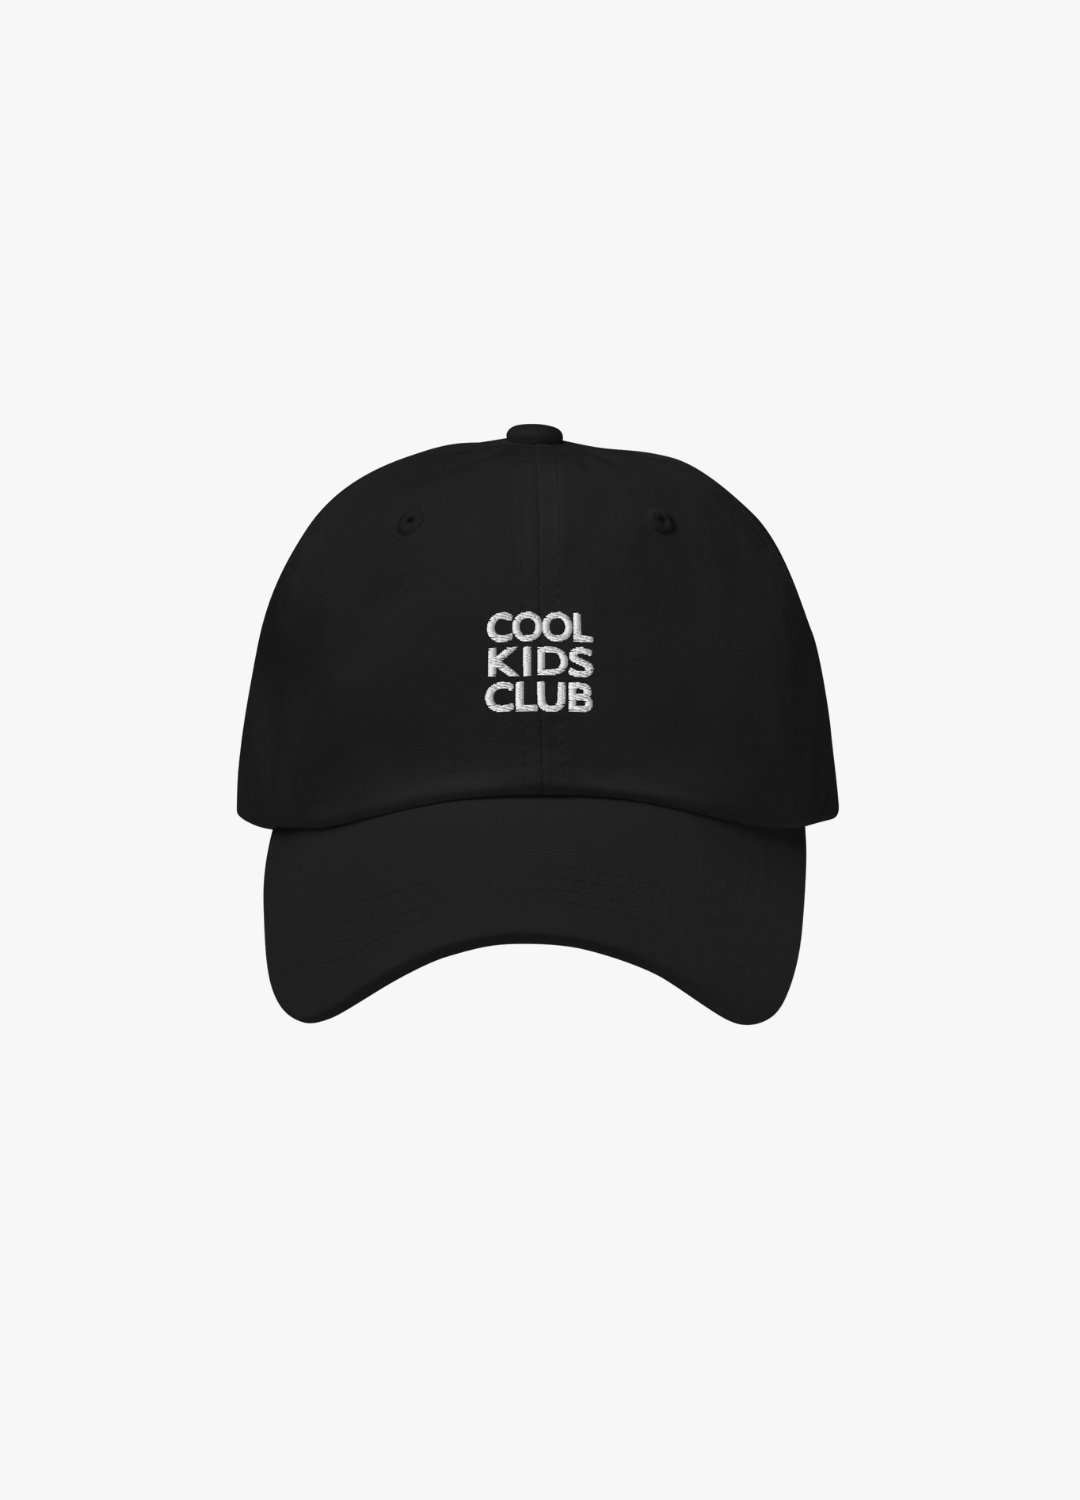 casquette noire unisexe brodée en blanc cool kids club